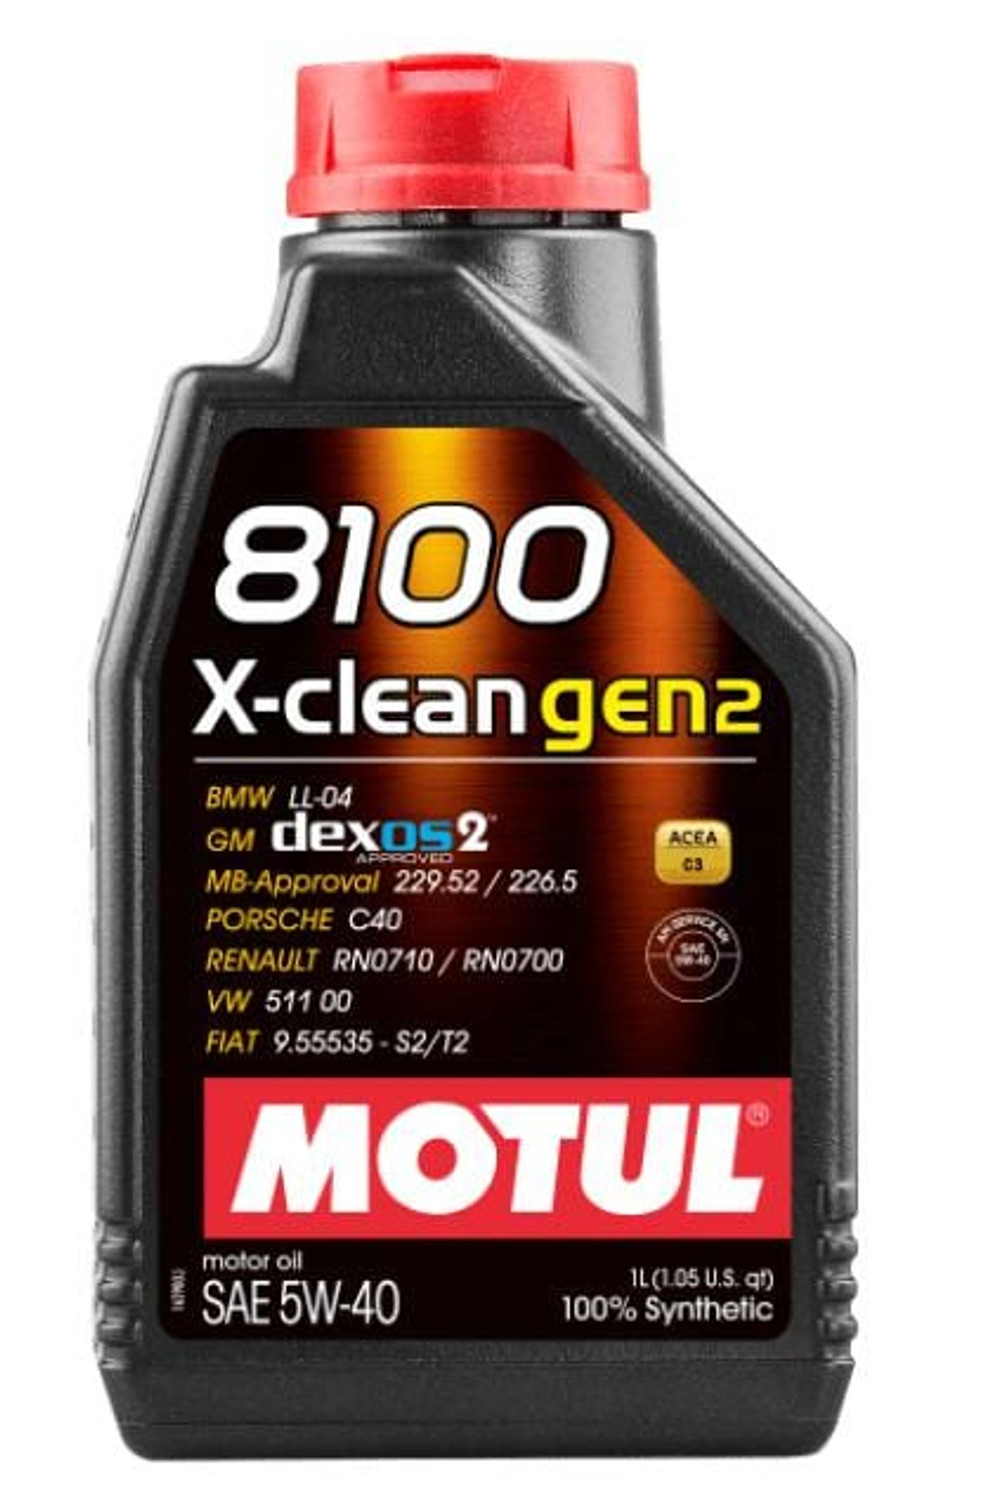 Motul 5W40 X-Cess gen2 Motor Oil 1-Liter Bottle